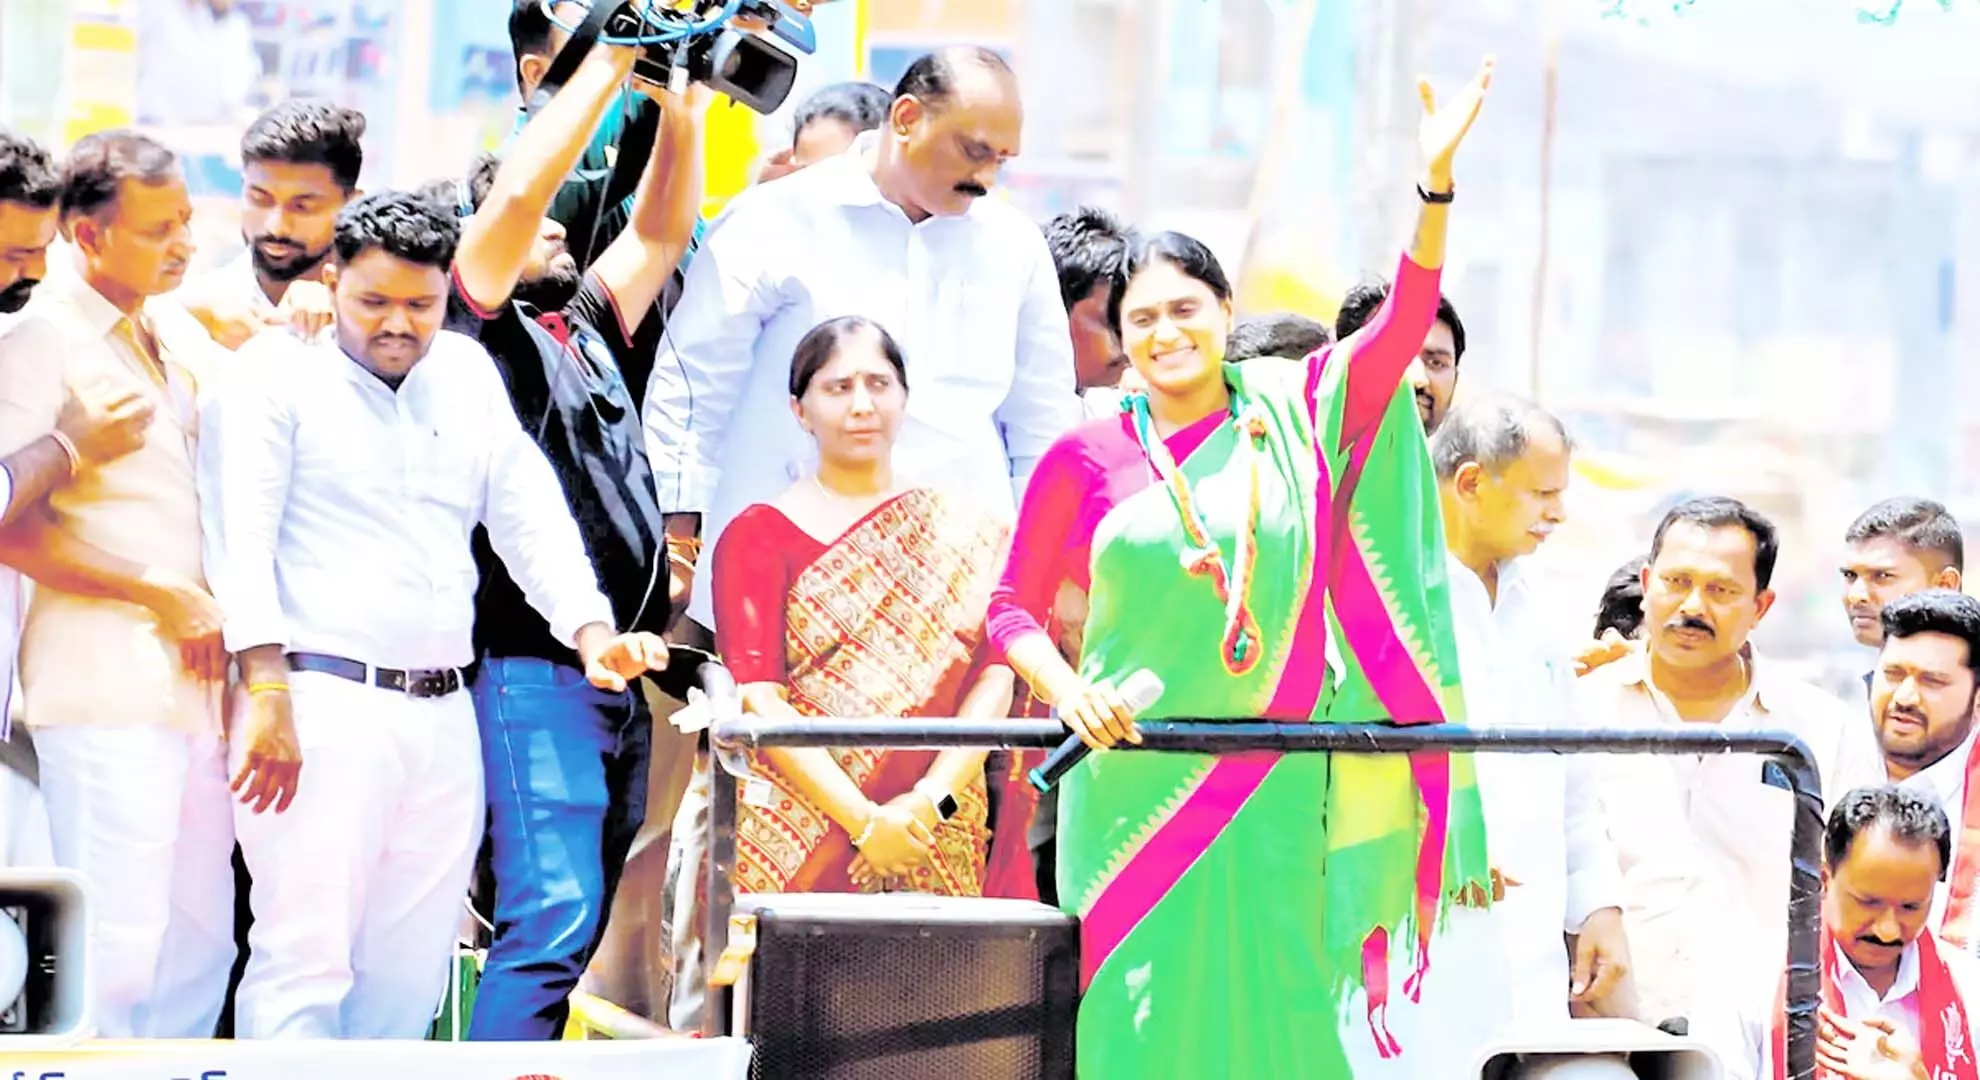 शर्मिला की चुनावी सभा को बाधित करने का प्रयास